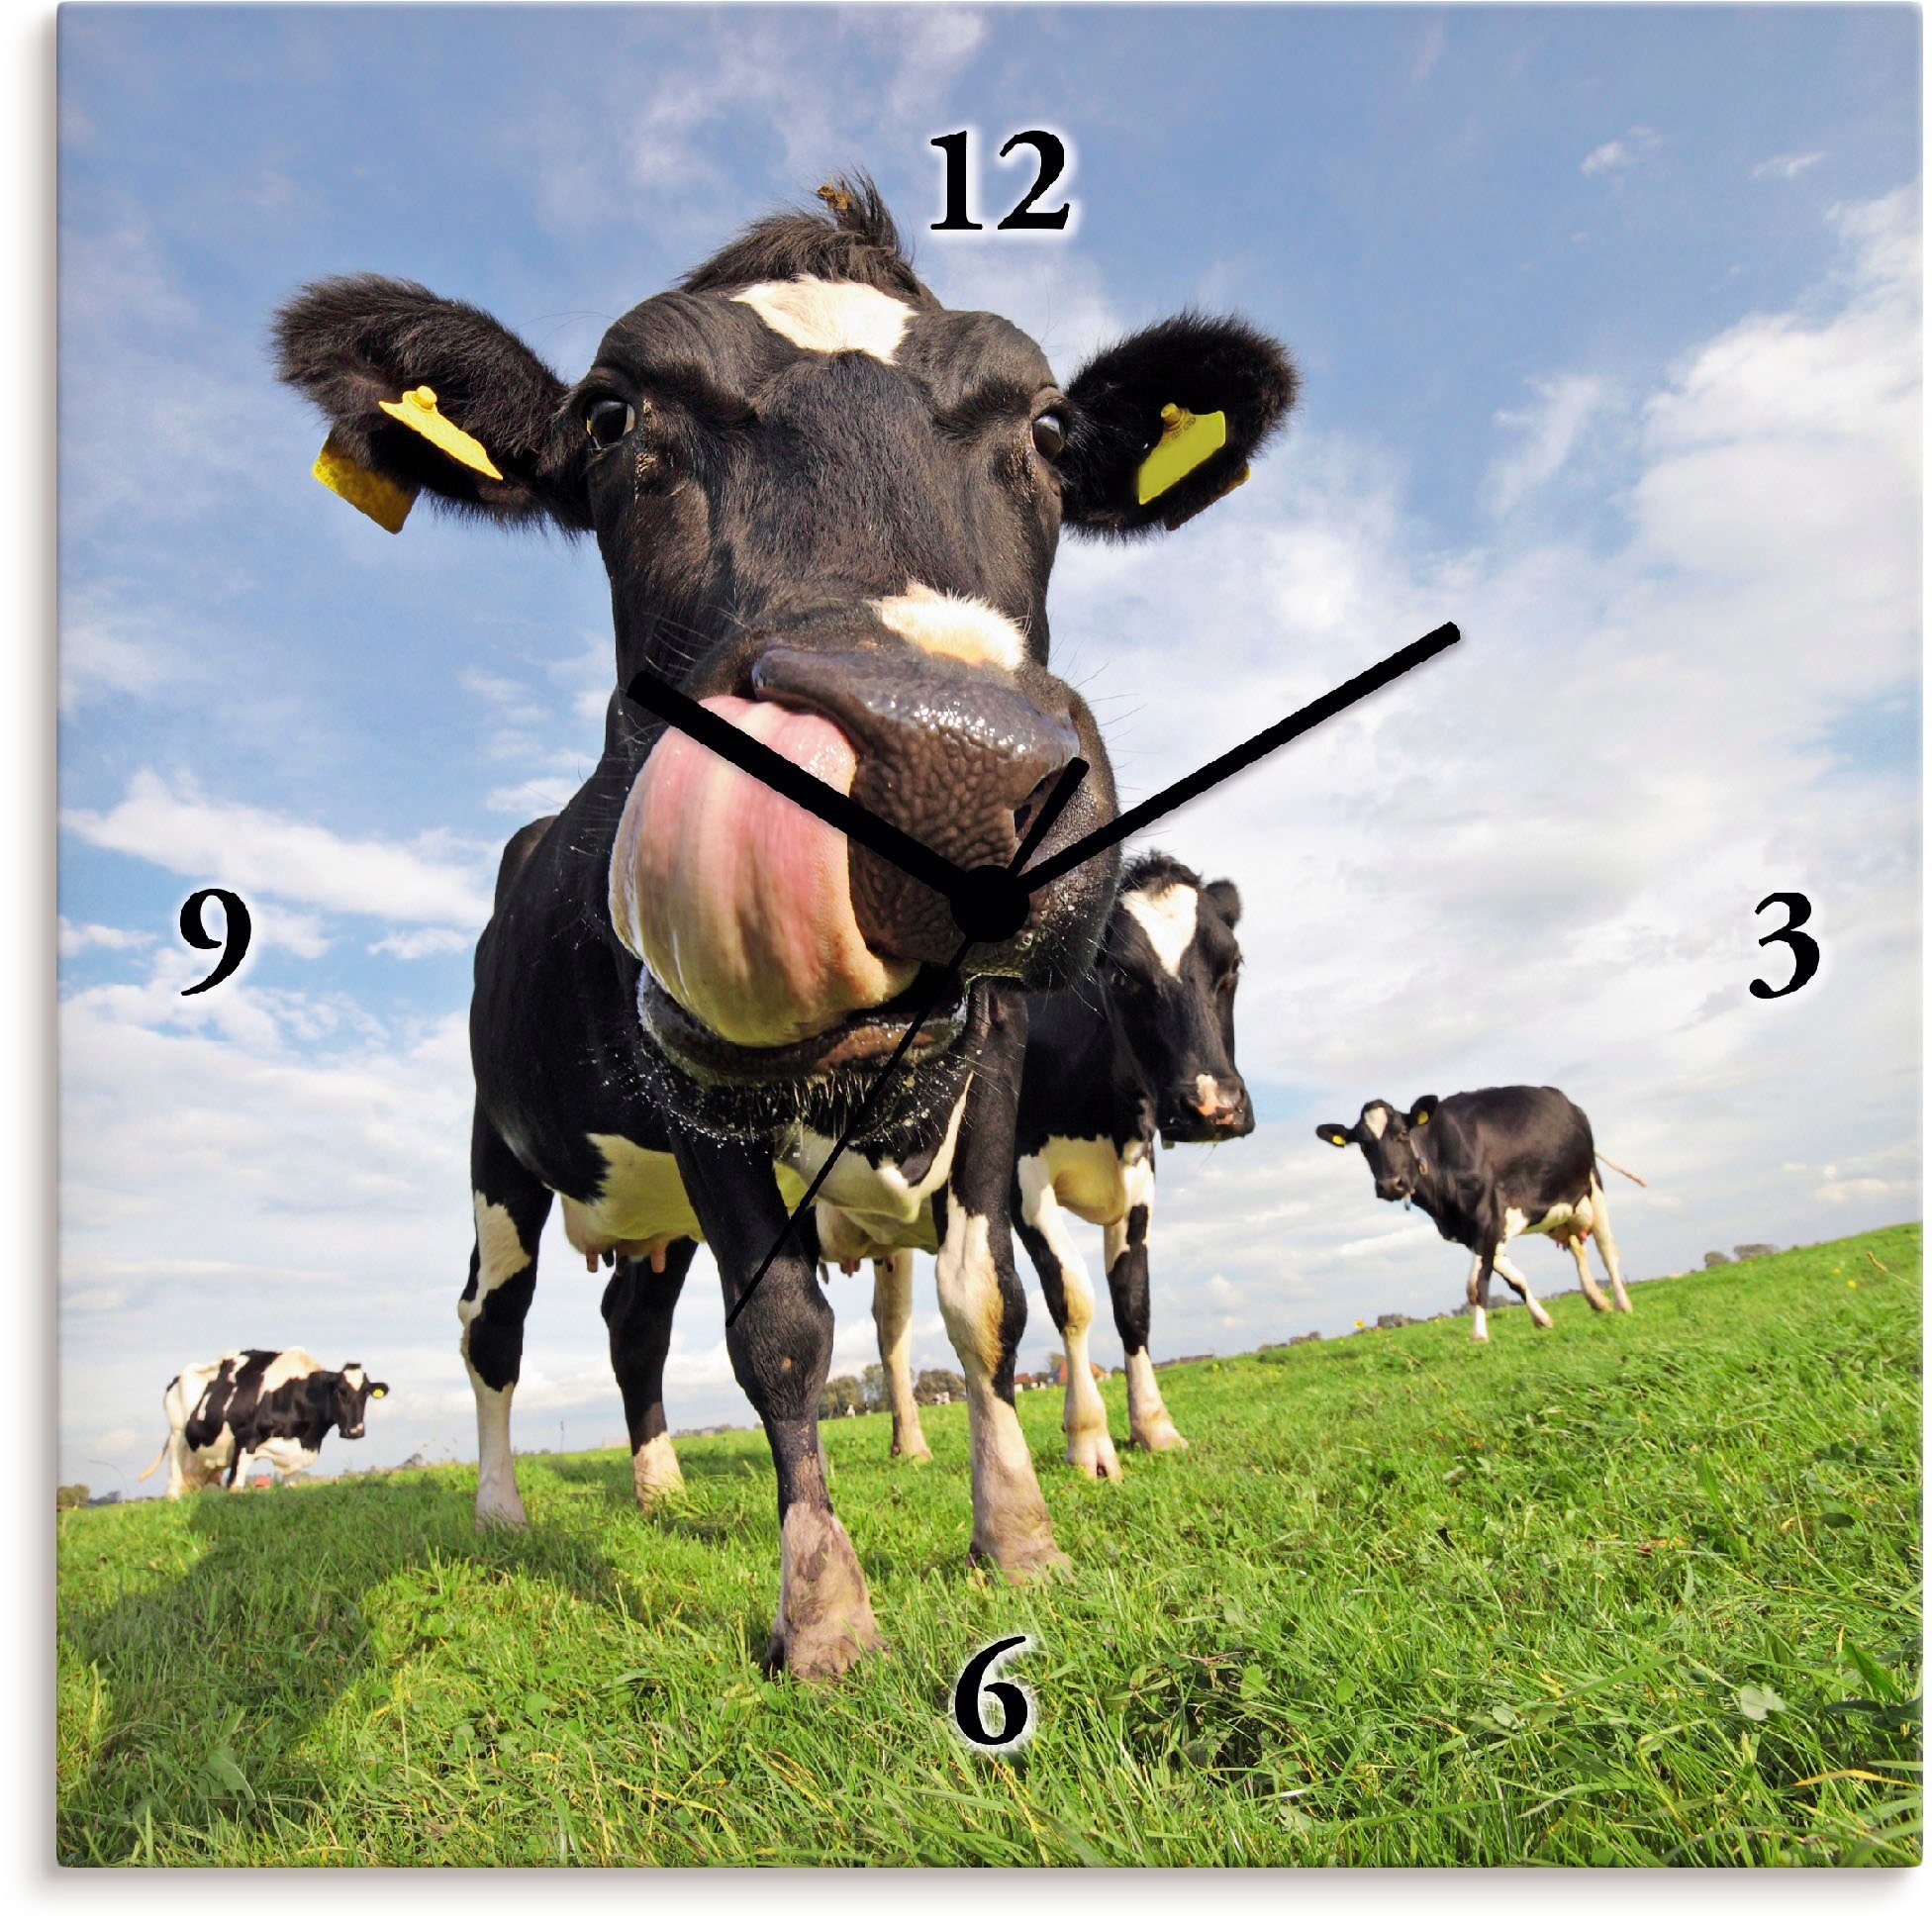 Artland Wandklok Holstein-koe met enorme tong geluidloos, zonder tikkende geluiden, niet tikkend, geruisloos - naar keuze: radiografische klok of kwartsklok, moderne klok voor woon